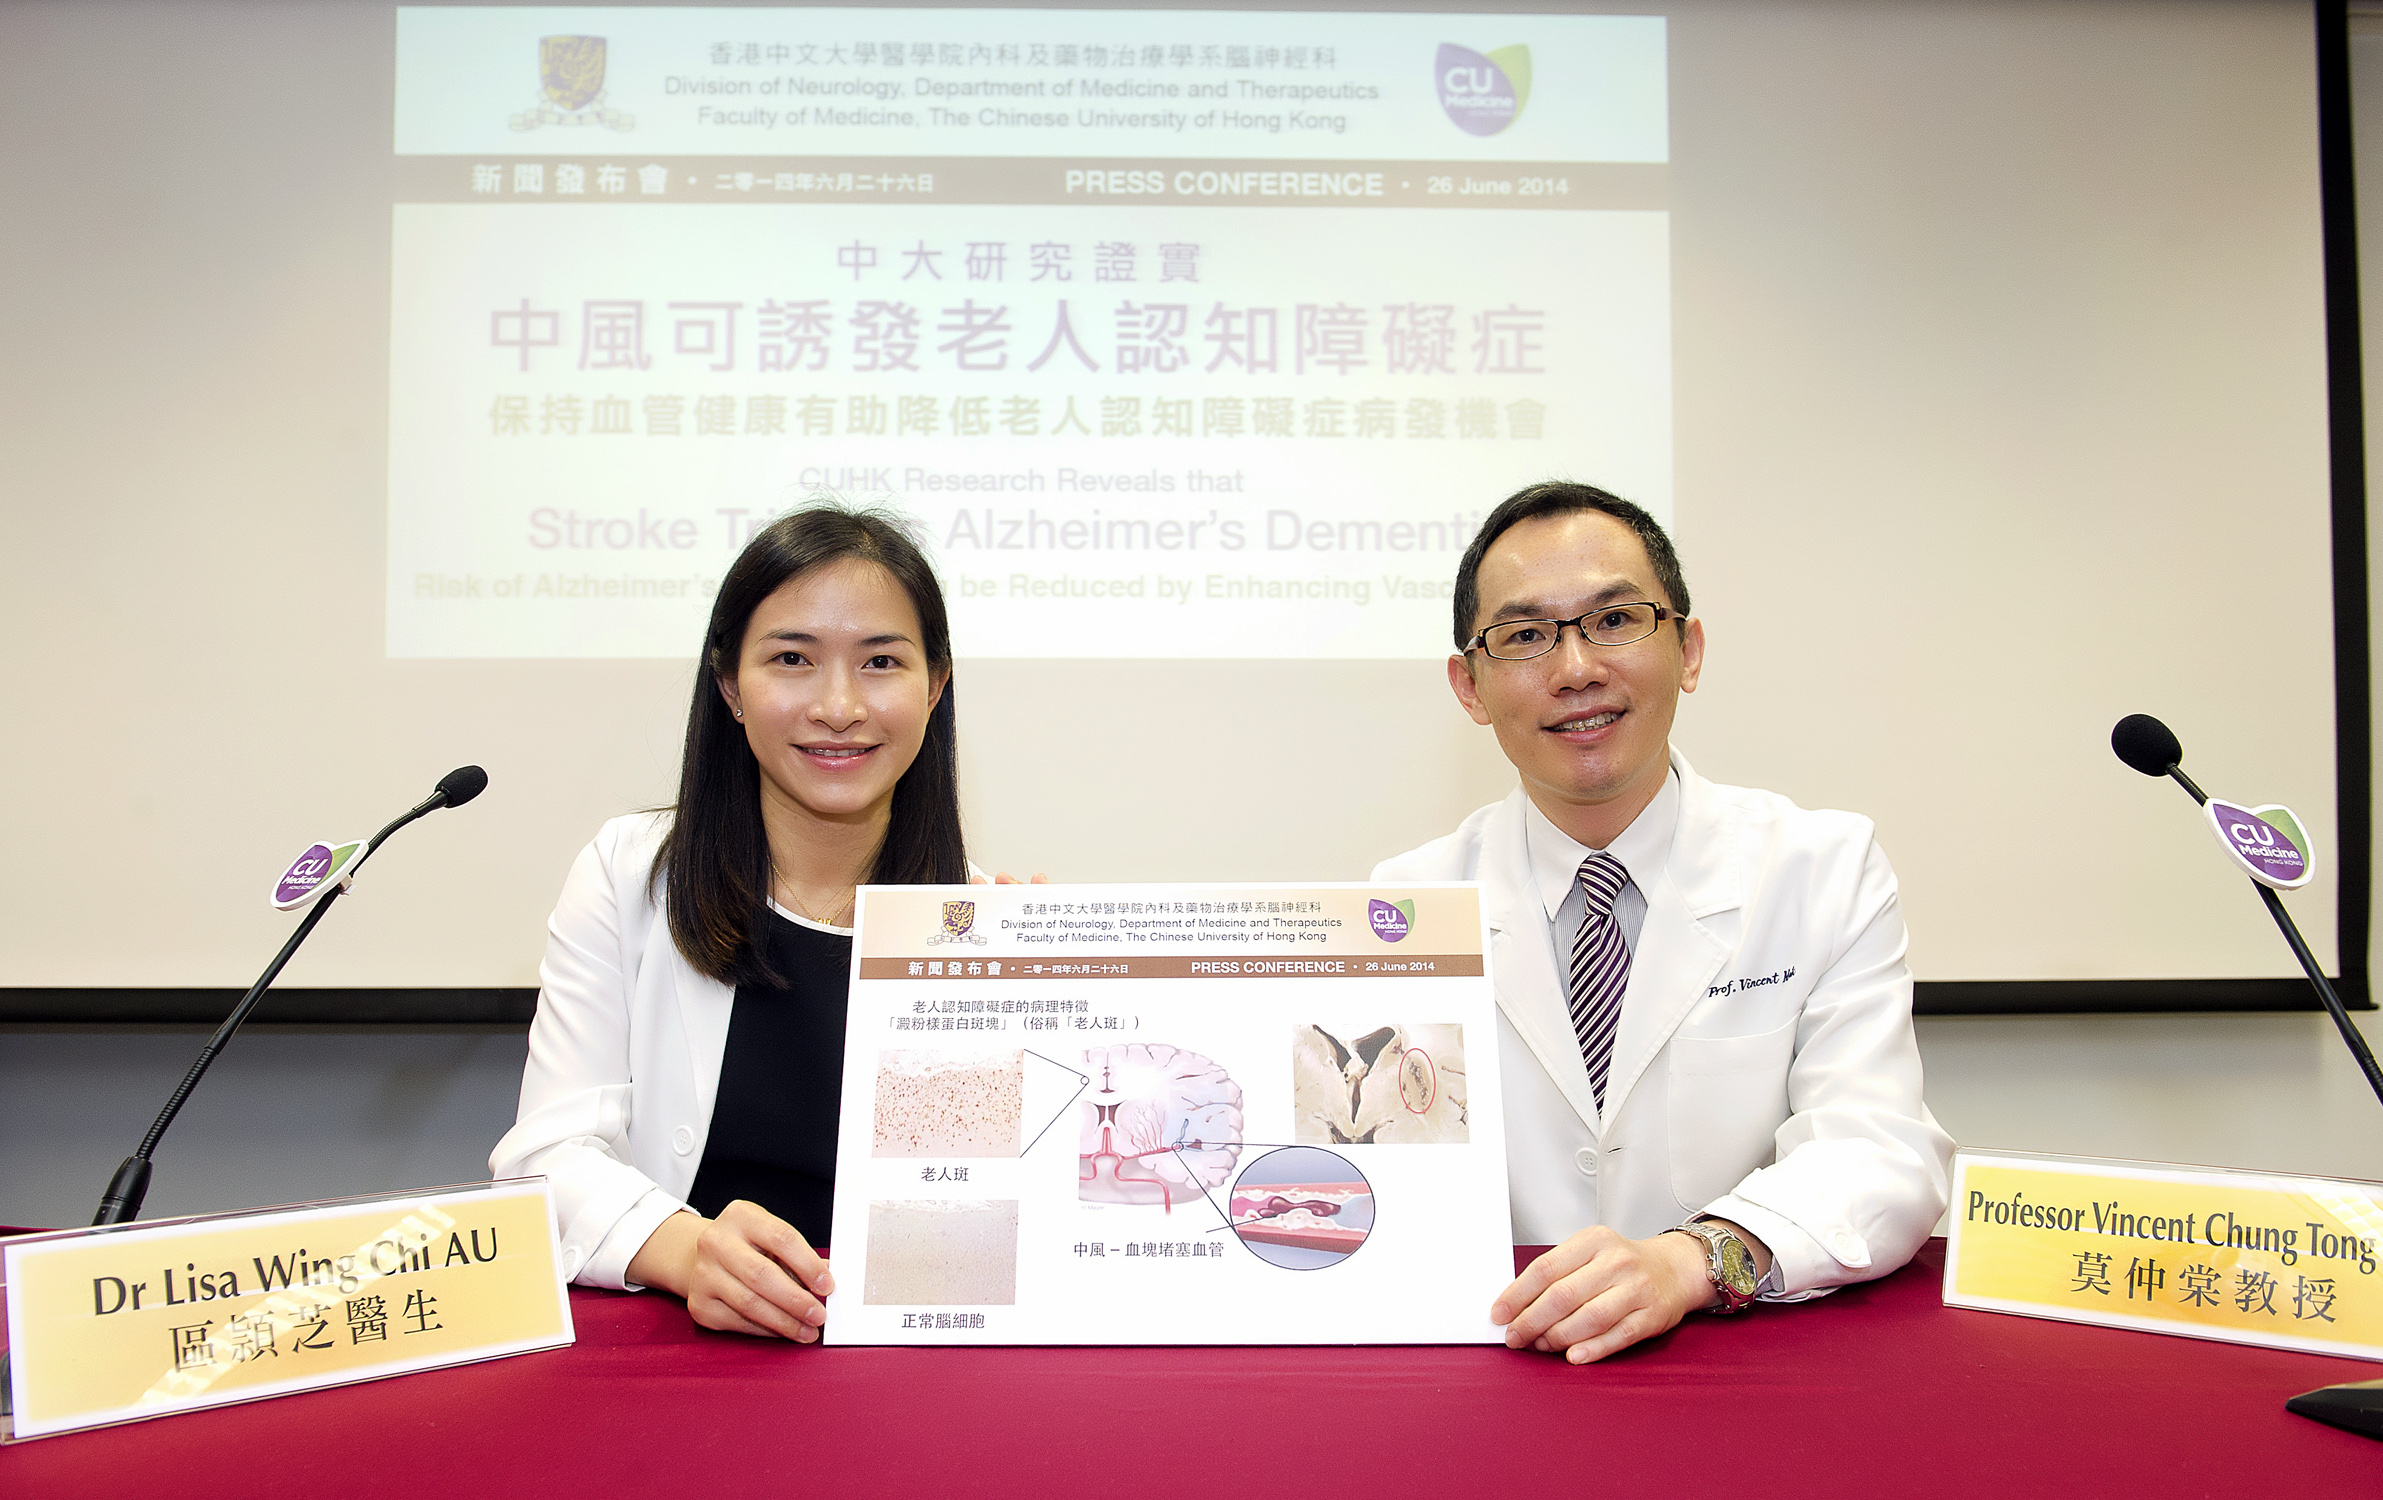 中大内科及药物治疗学系脑神经科莫仲棠教授 (右)和名誉临床导师区頴芝医生。